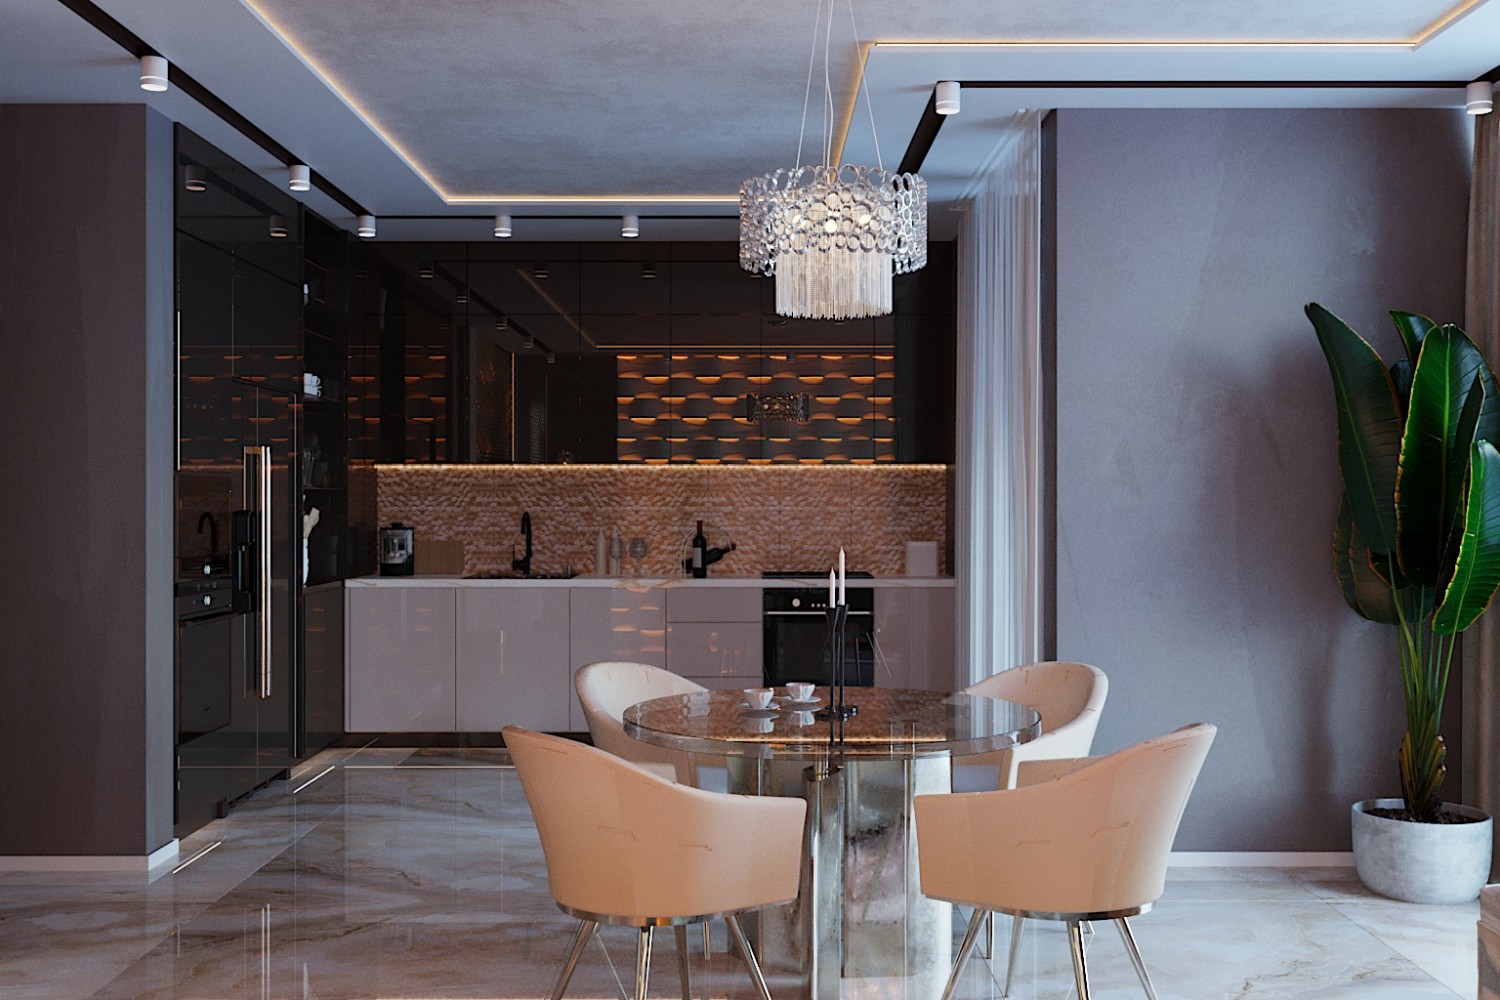 Кухня-вітальня - Дизайн 5-кімнатної квартири в стилі Арт-деко з елементами класики, ЖК Комфорт Таун, 140 м.кв - студія дизайну Redis&Co